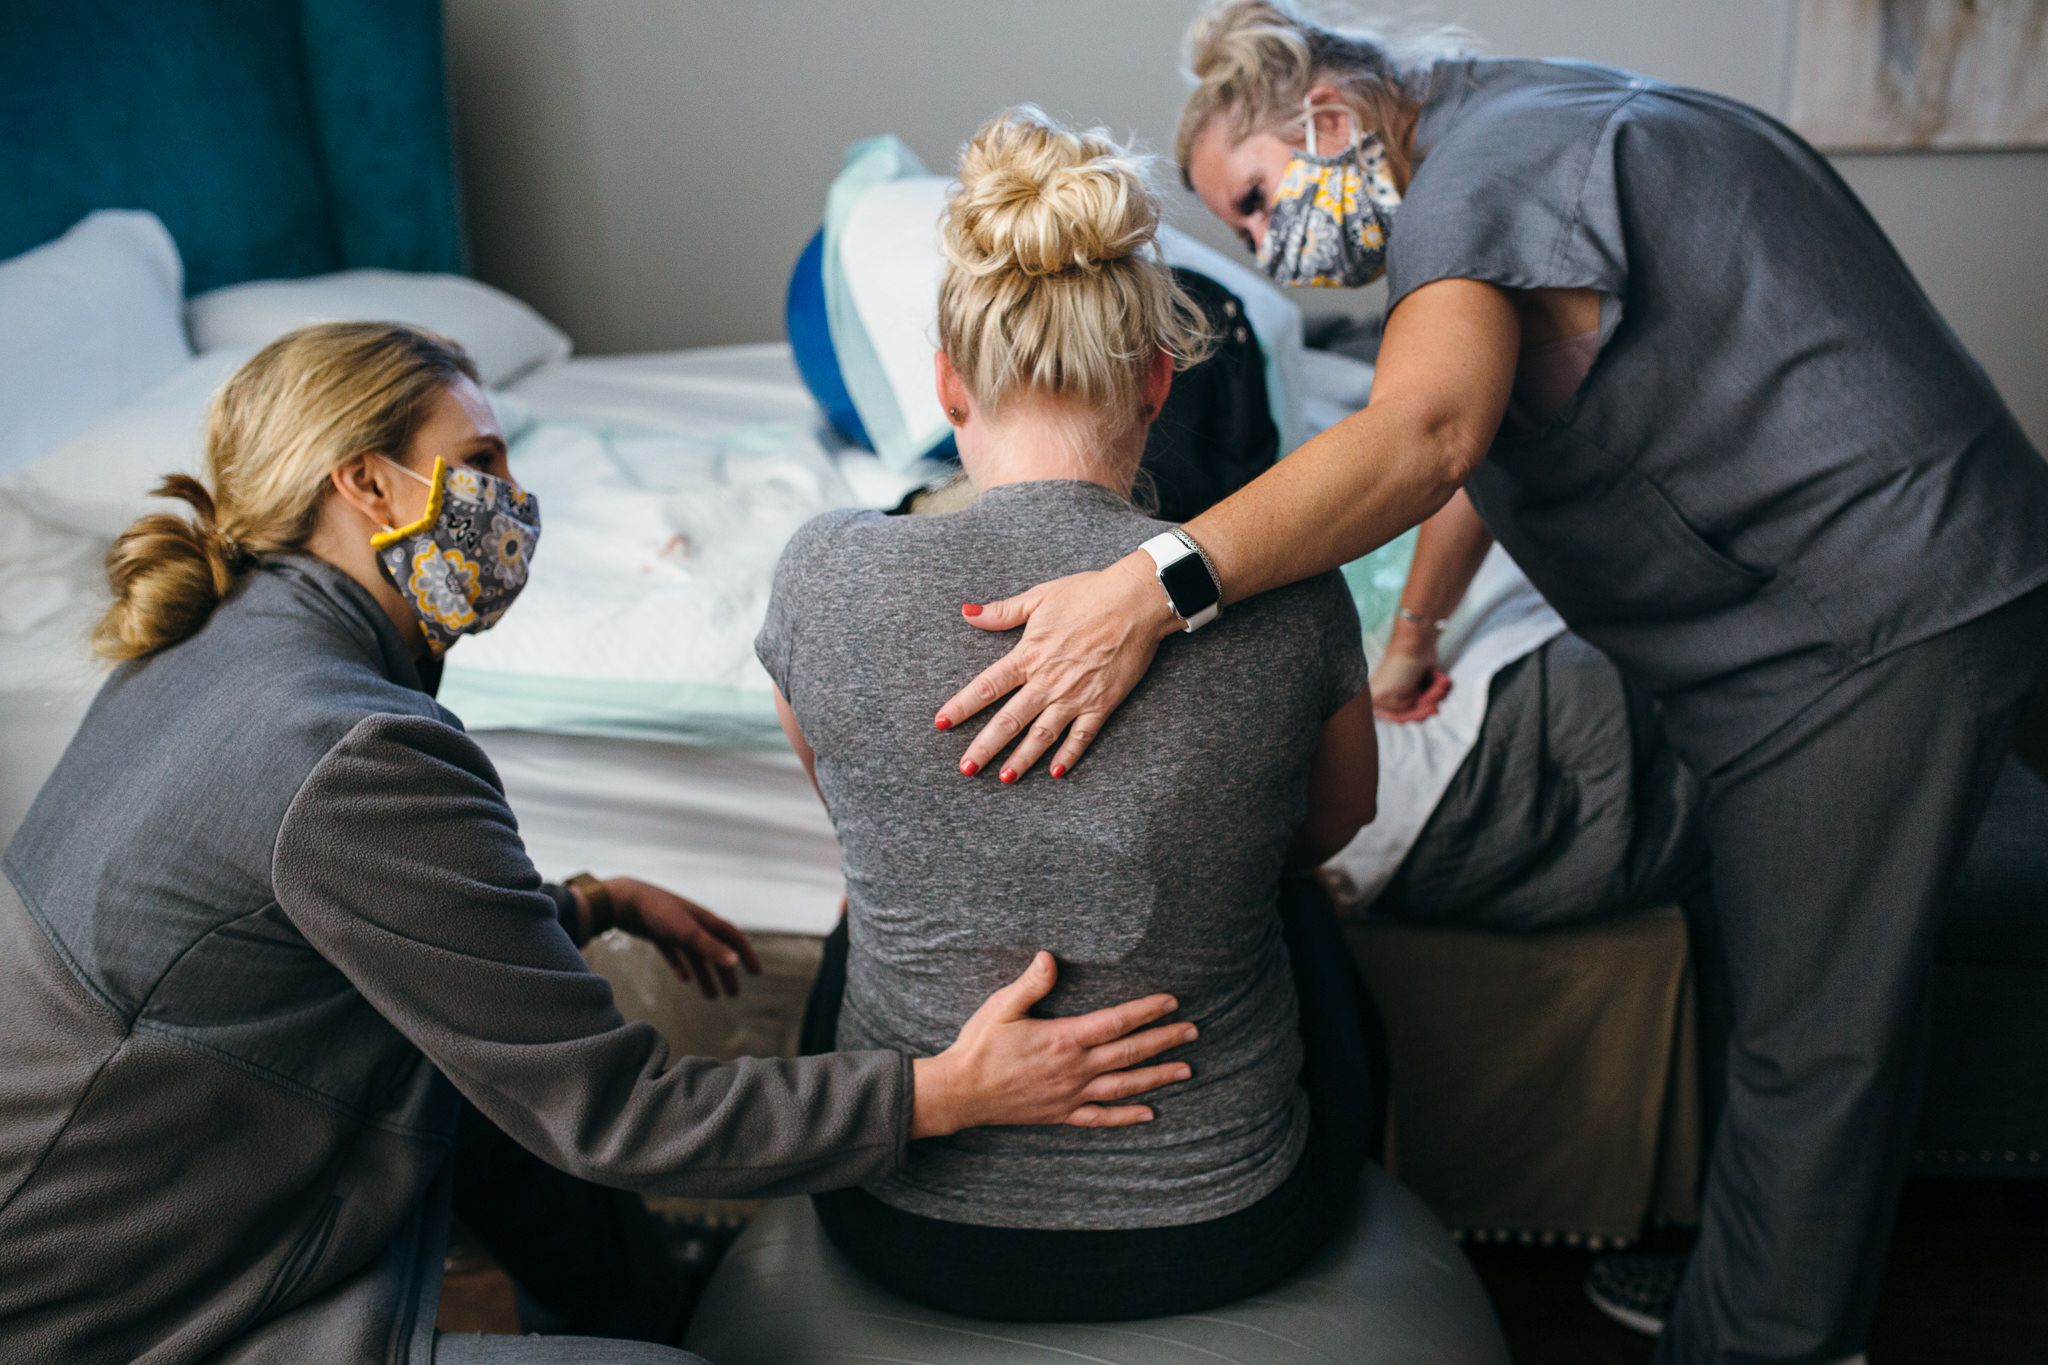 midwifery care in labor